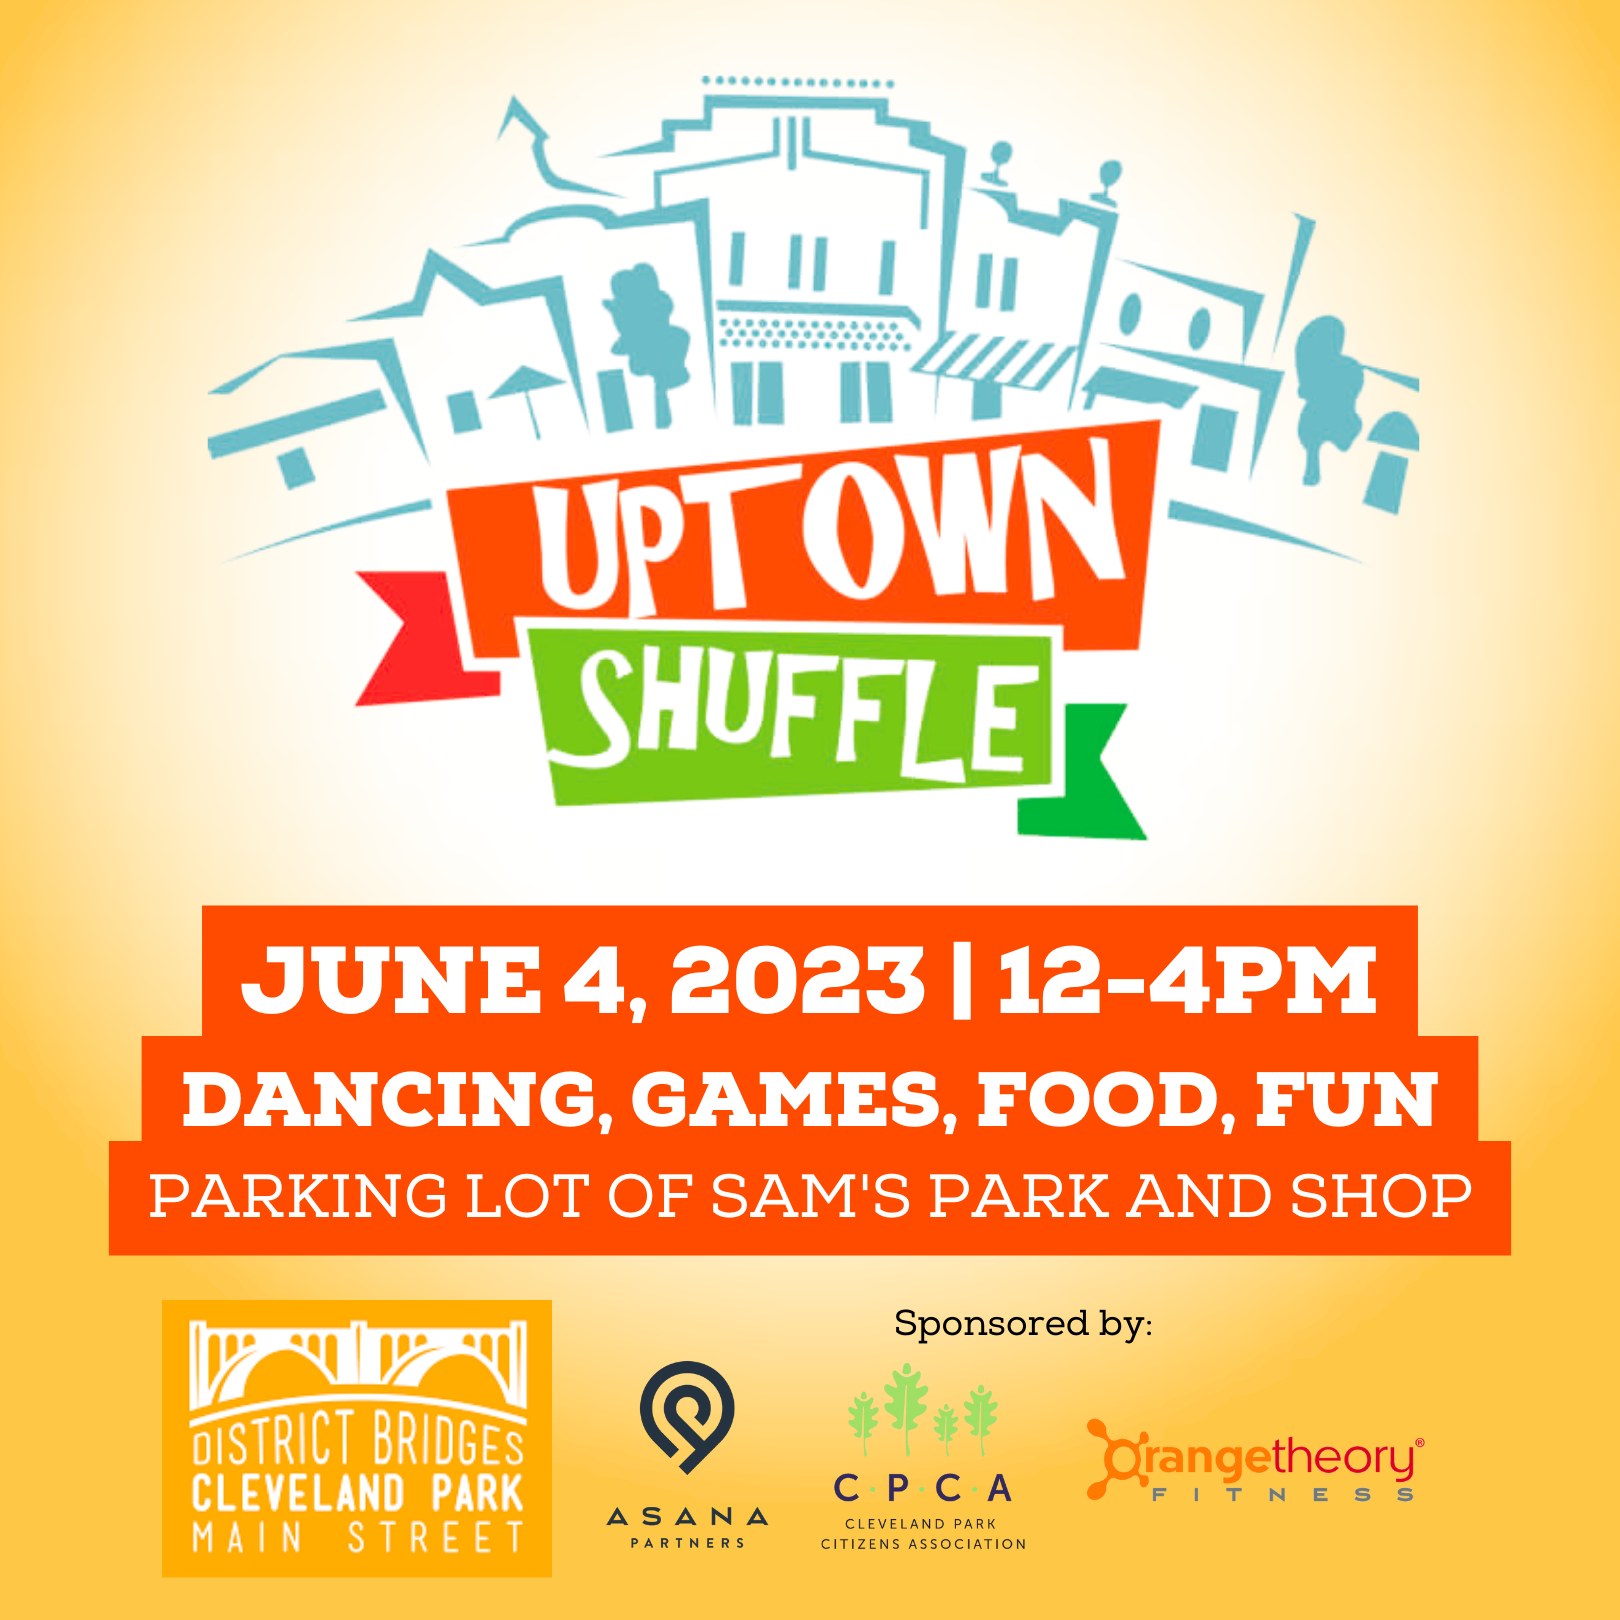 Uptown Shuffle